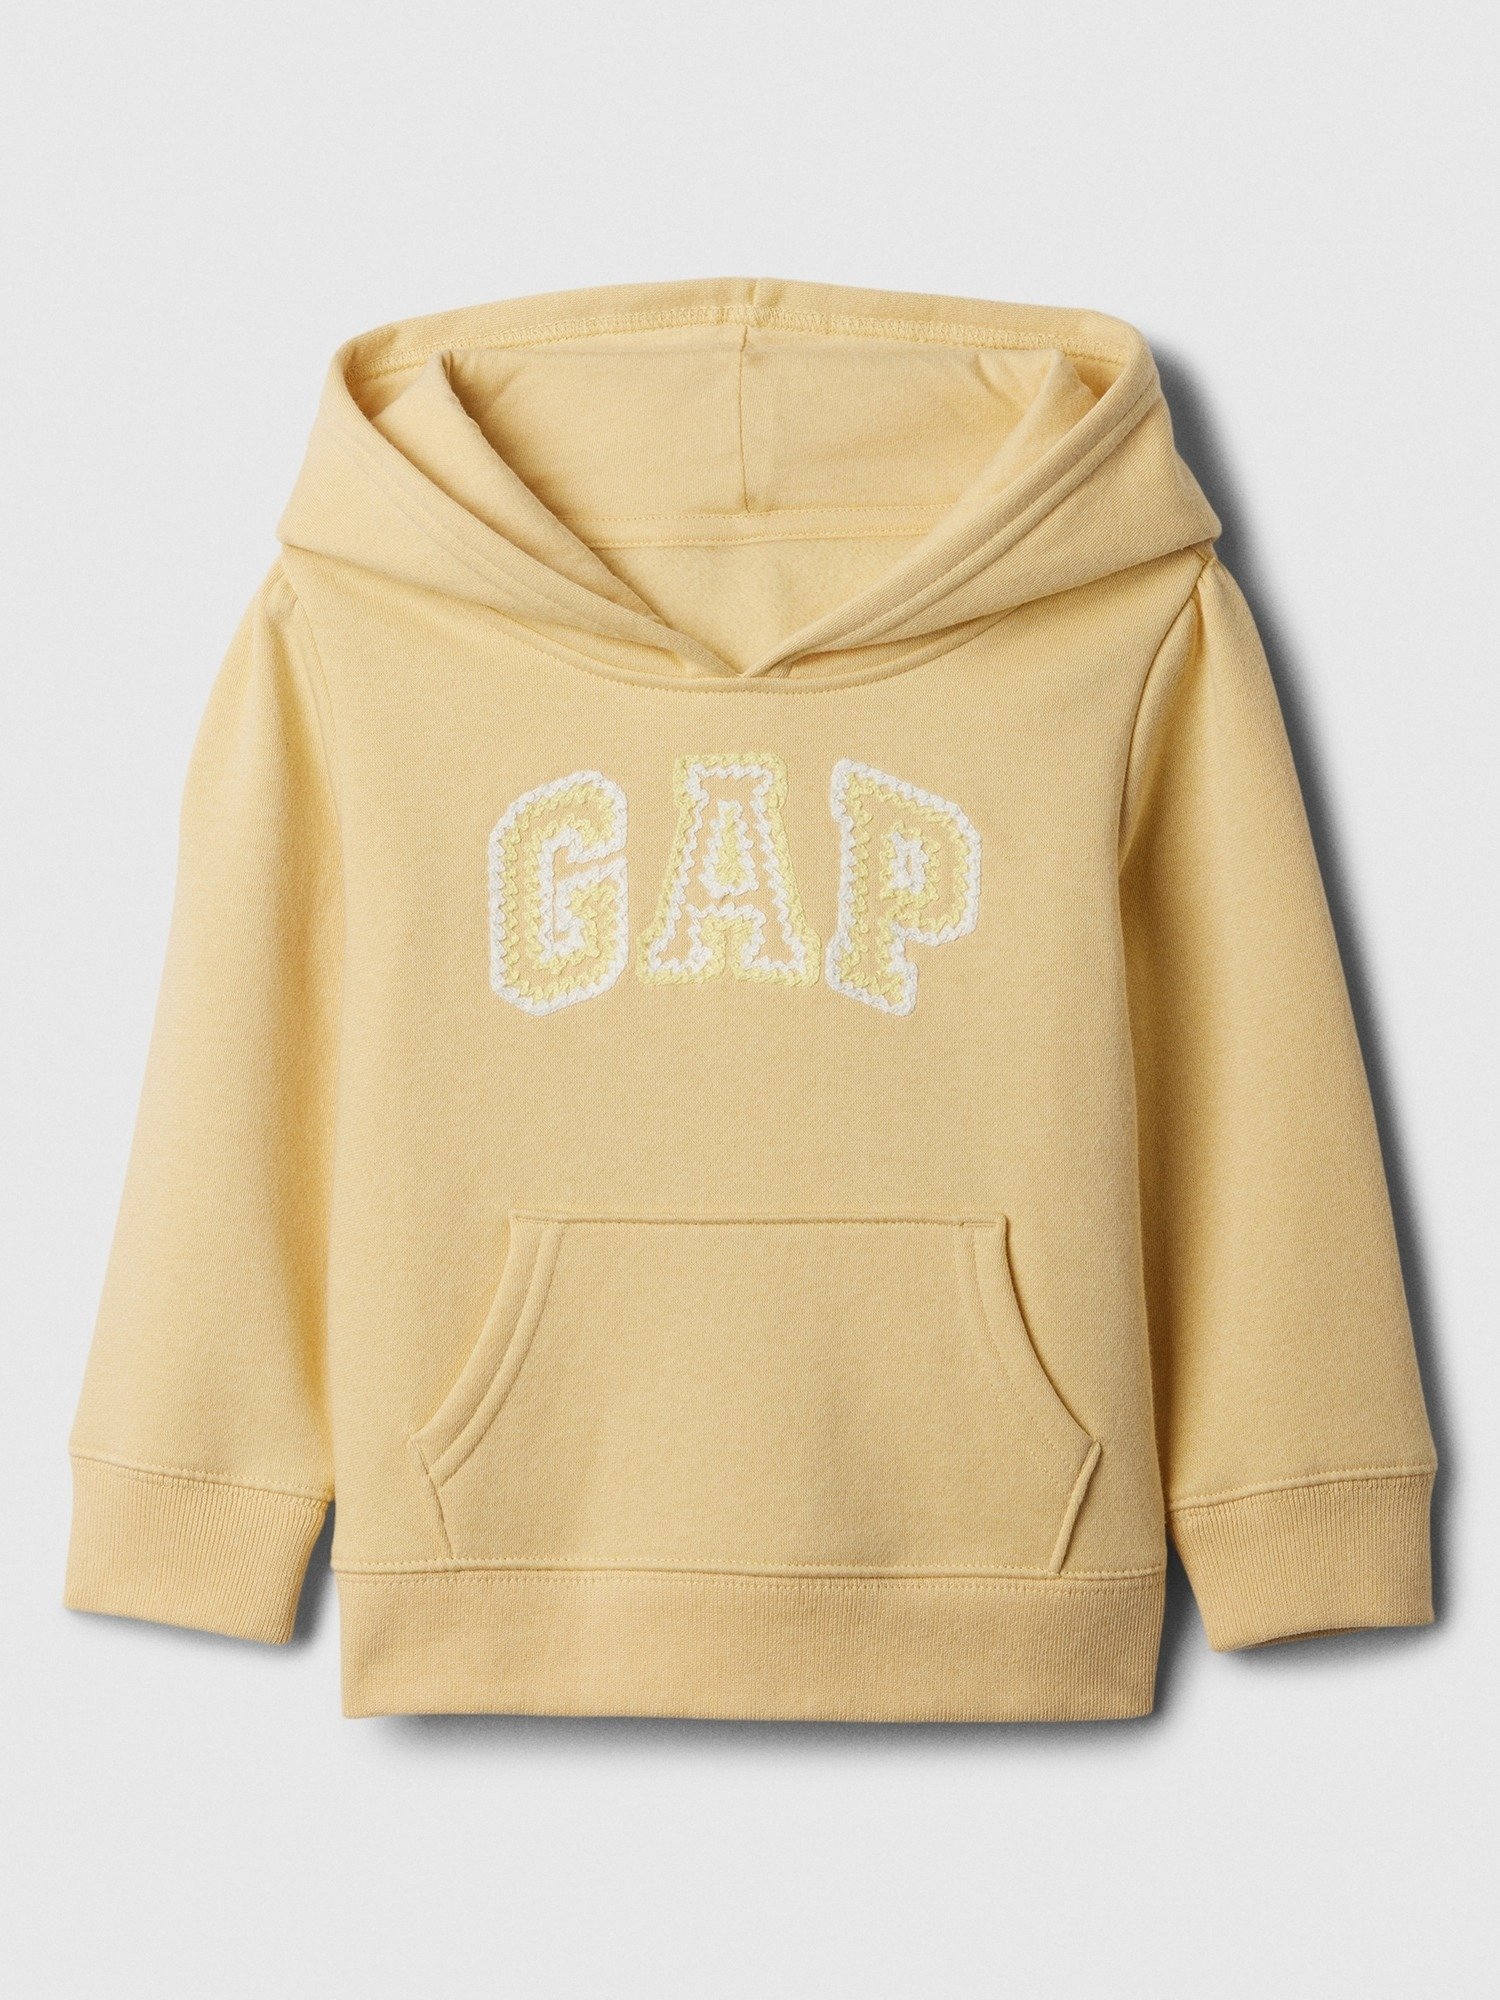 Gap Logo Fleece Kumaş Sweatshirt product image